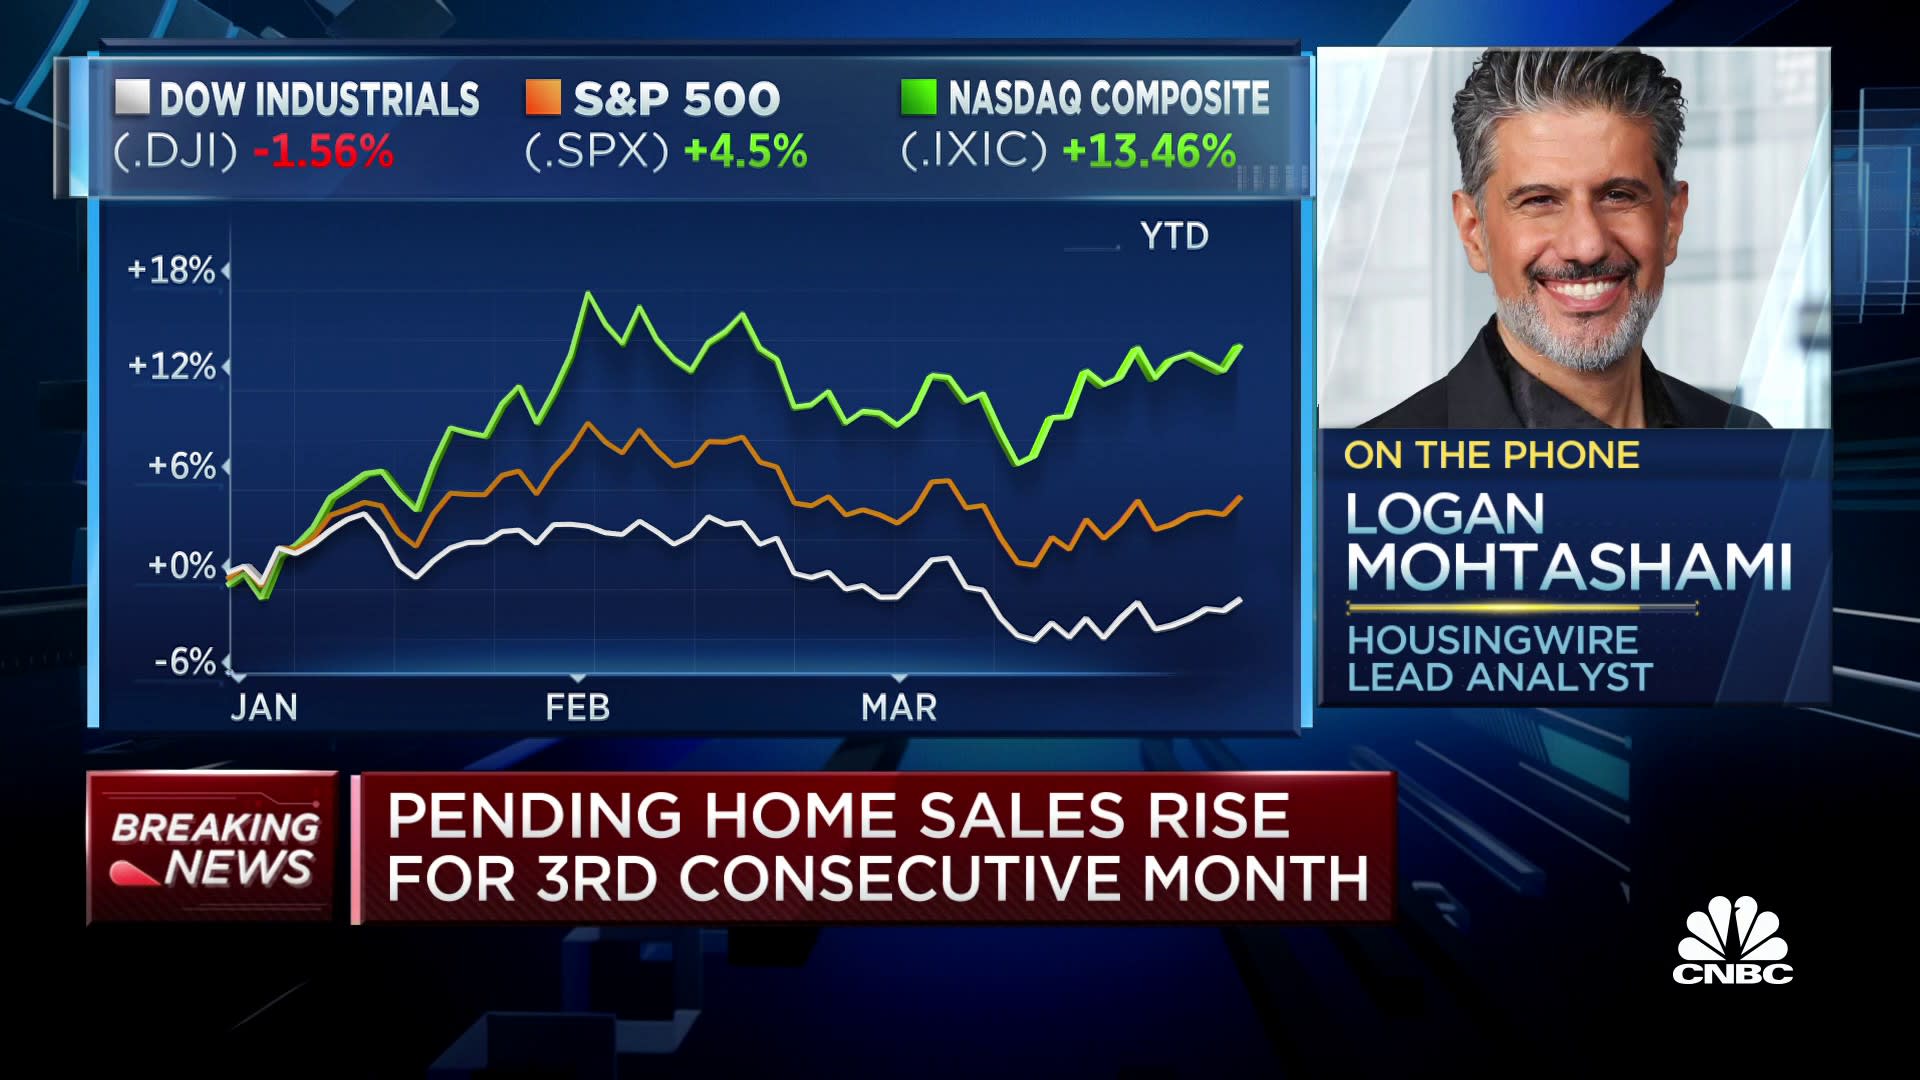 ФРС не успокоится, пока не увидит прорыв на рынке труда, говорит Мохташами из HousingWire.